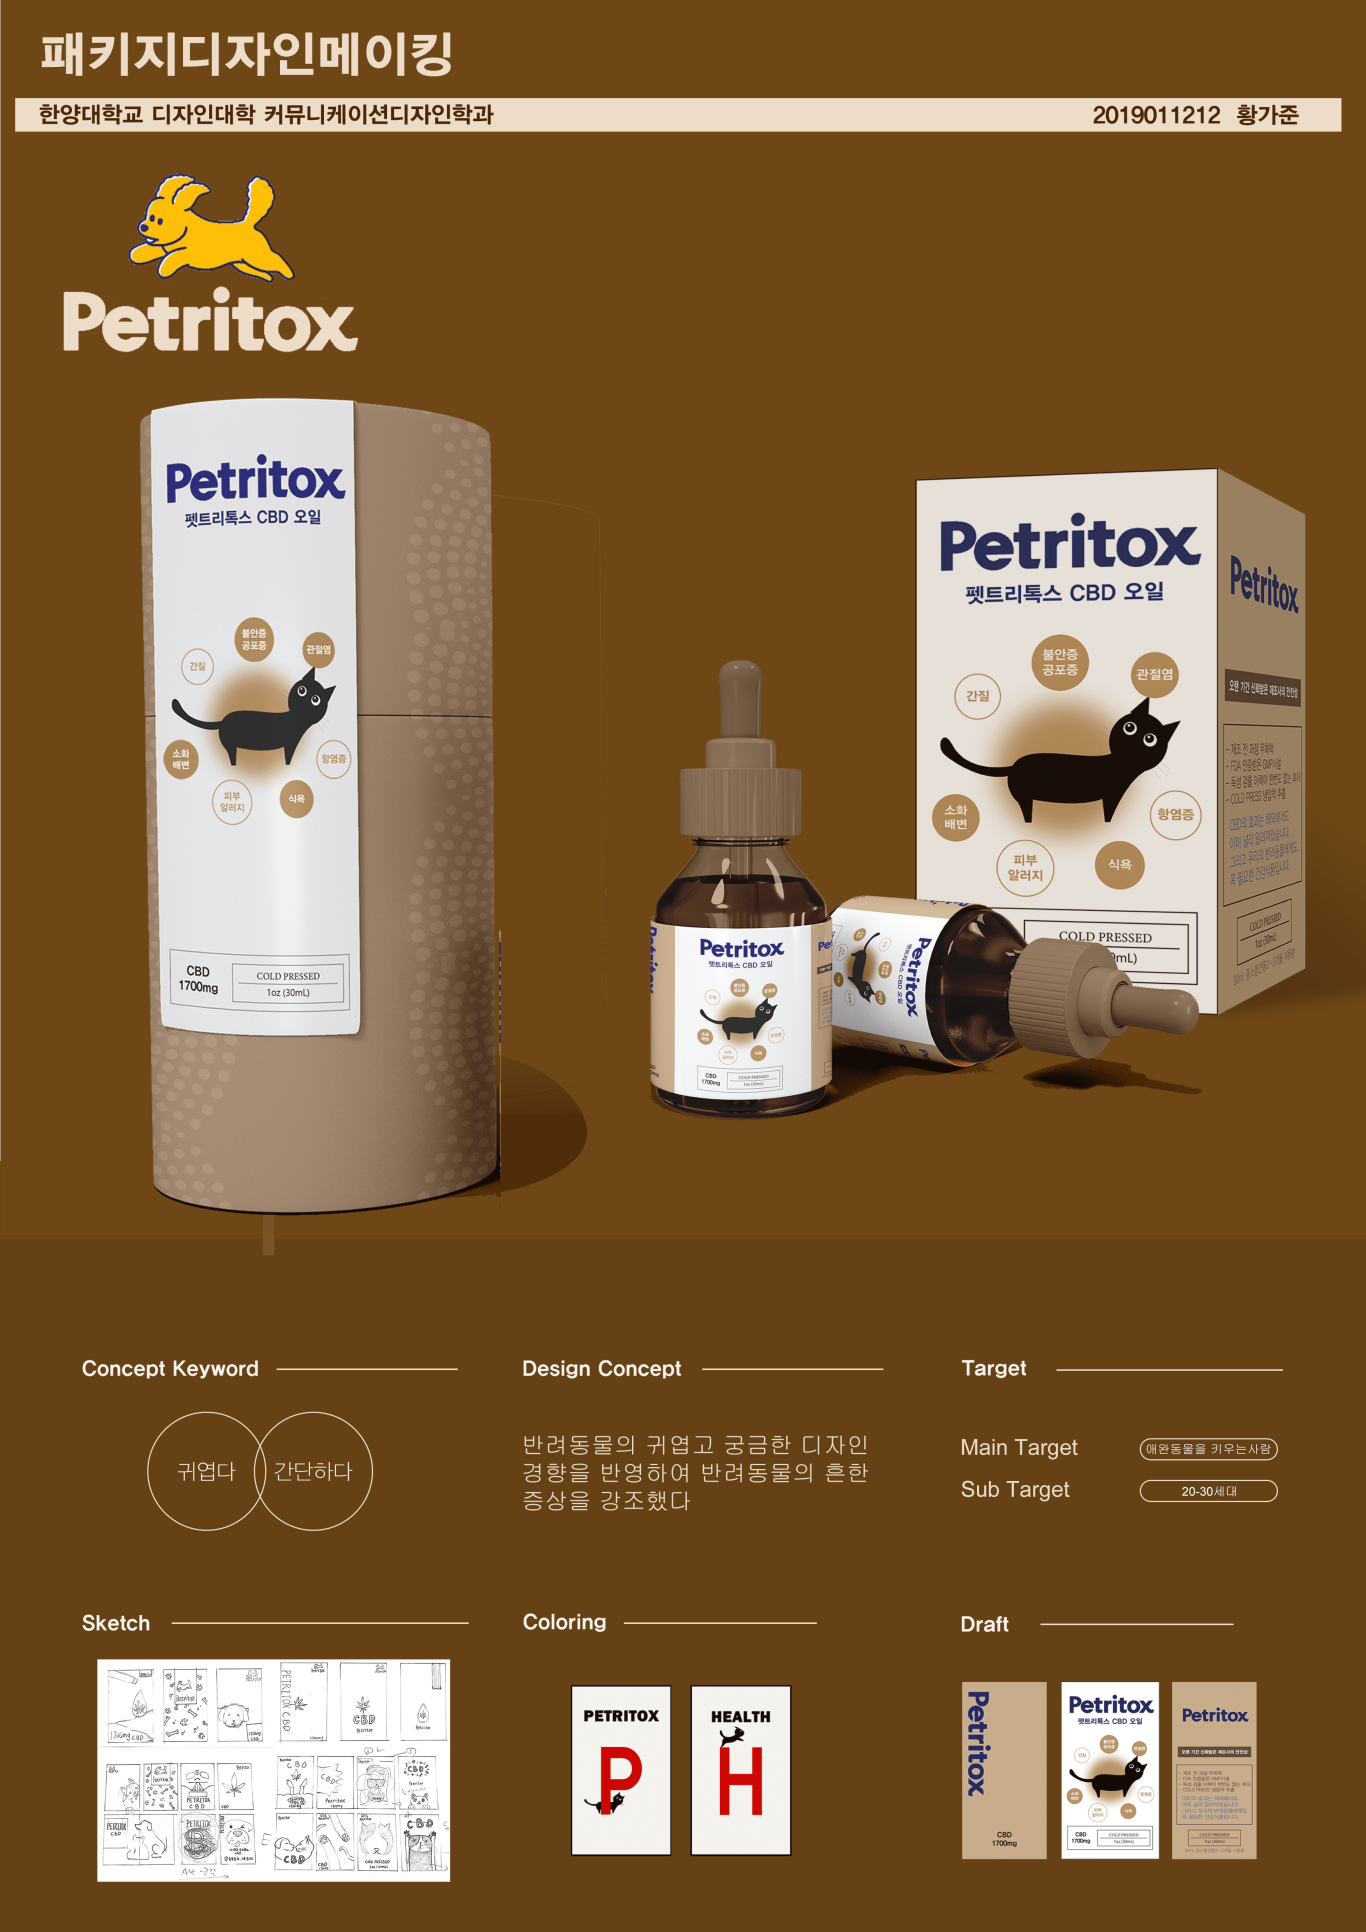 Petritox品牌包装设计图0